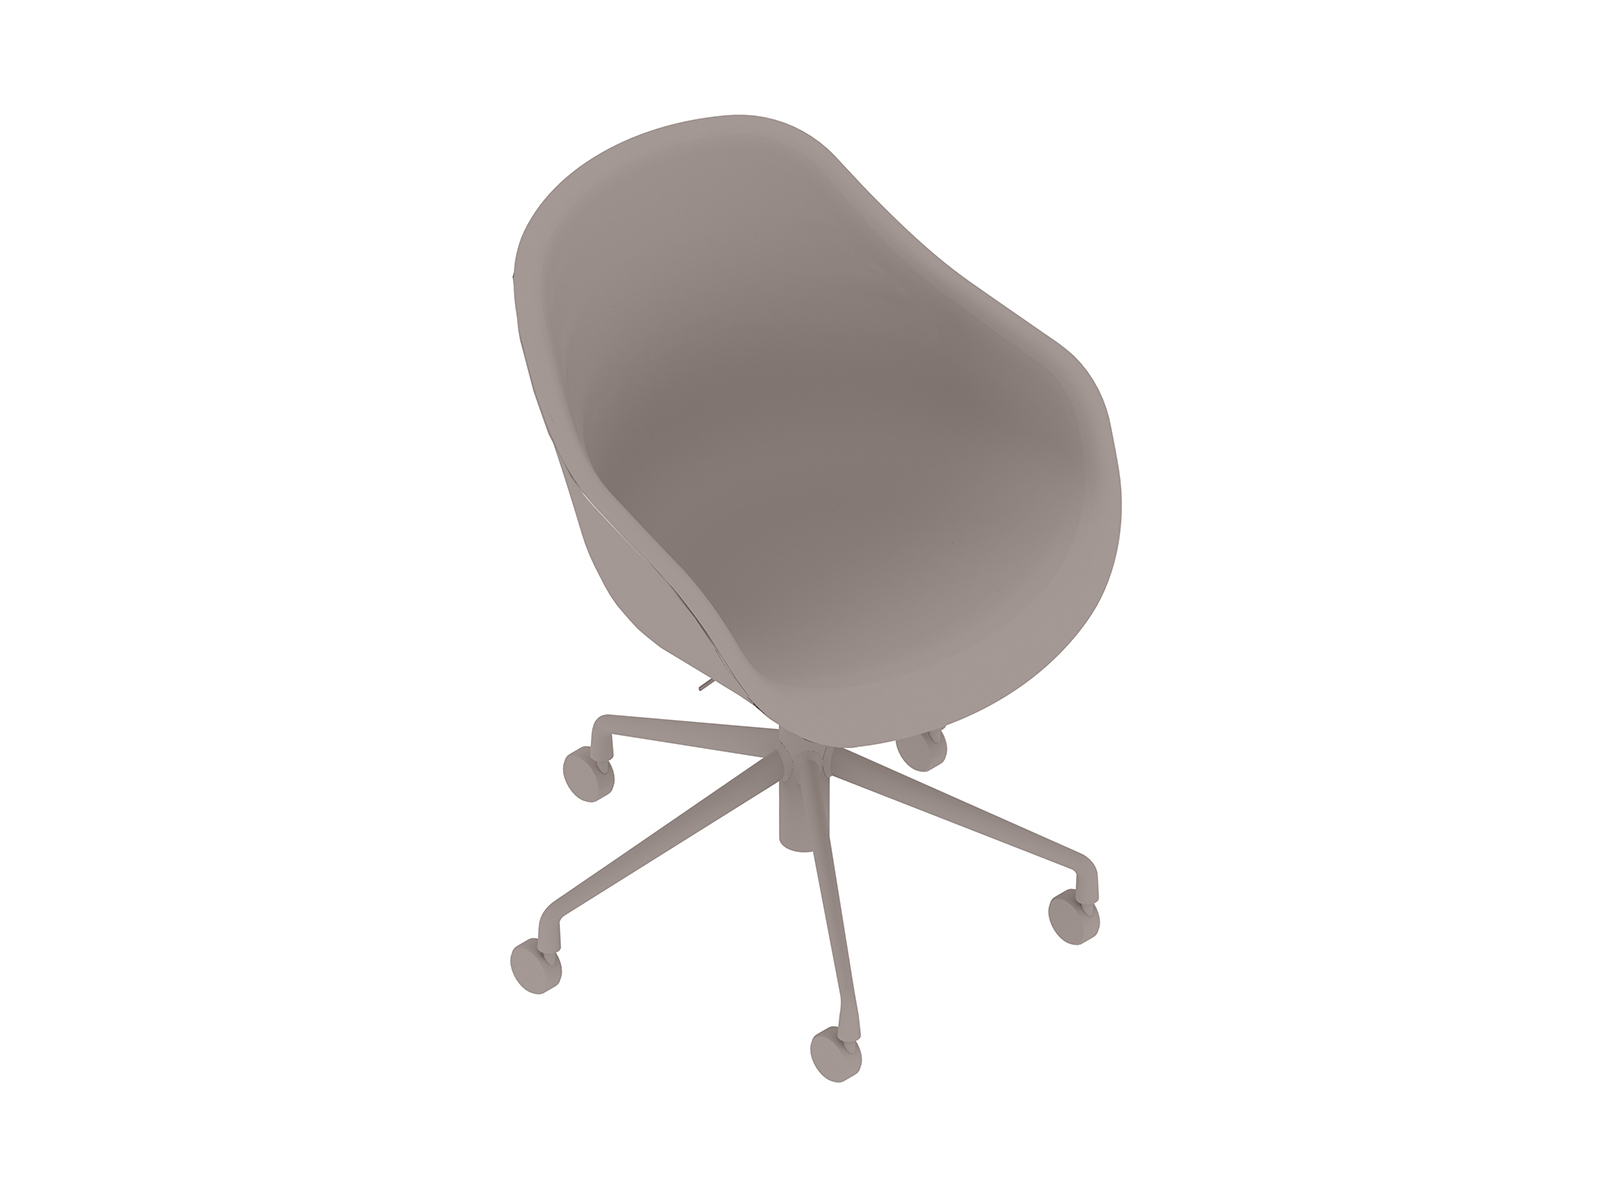 Uma renderização genérica - About A Chair, Escritório – Encosto alto – Com braços – Base com rodízios 5 estrelas – Estofamento Soft Duo (AAC153SD)